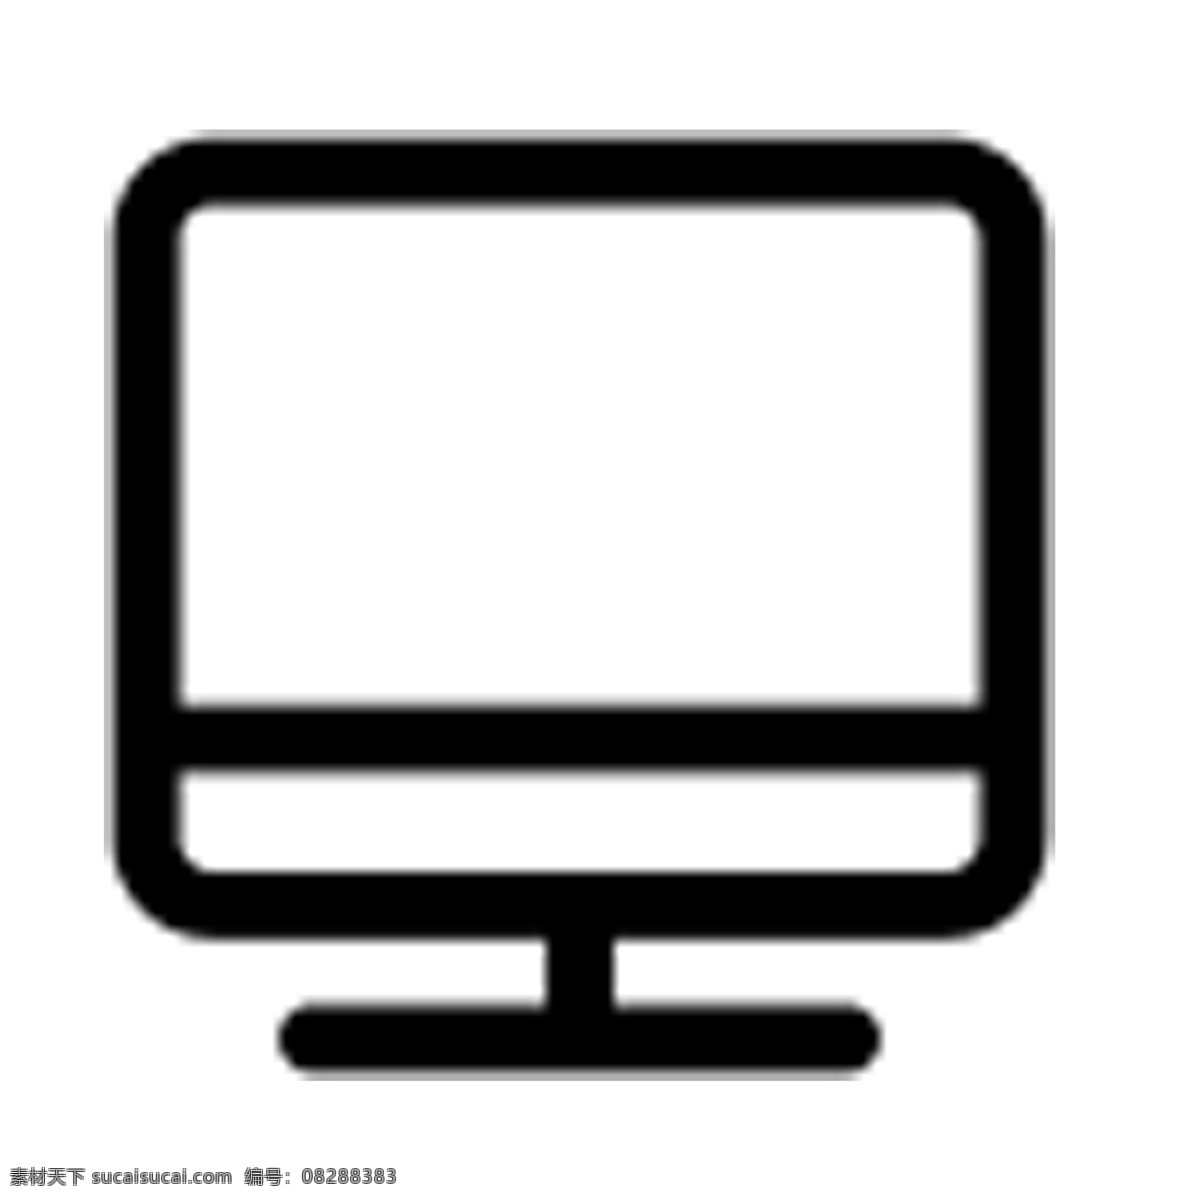 电脑 图标 卡通 屏幕 科技 手机图标 电子图标 图标设计 网页图标设计